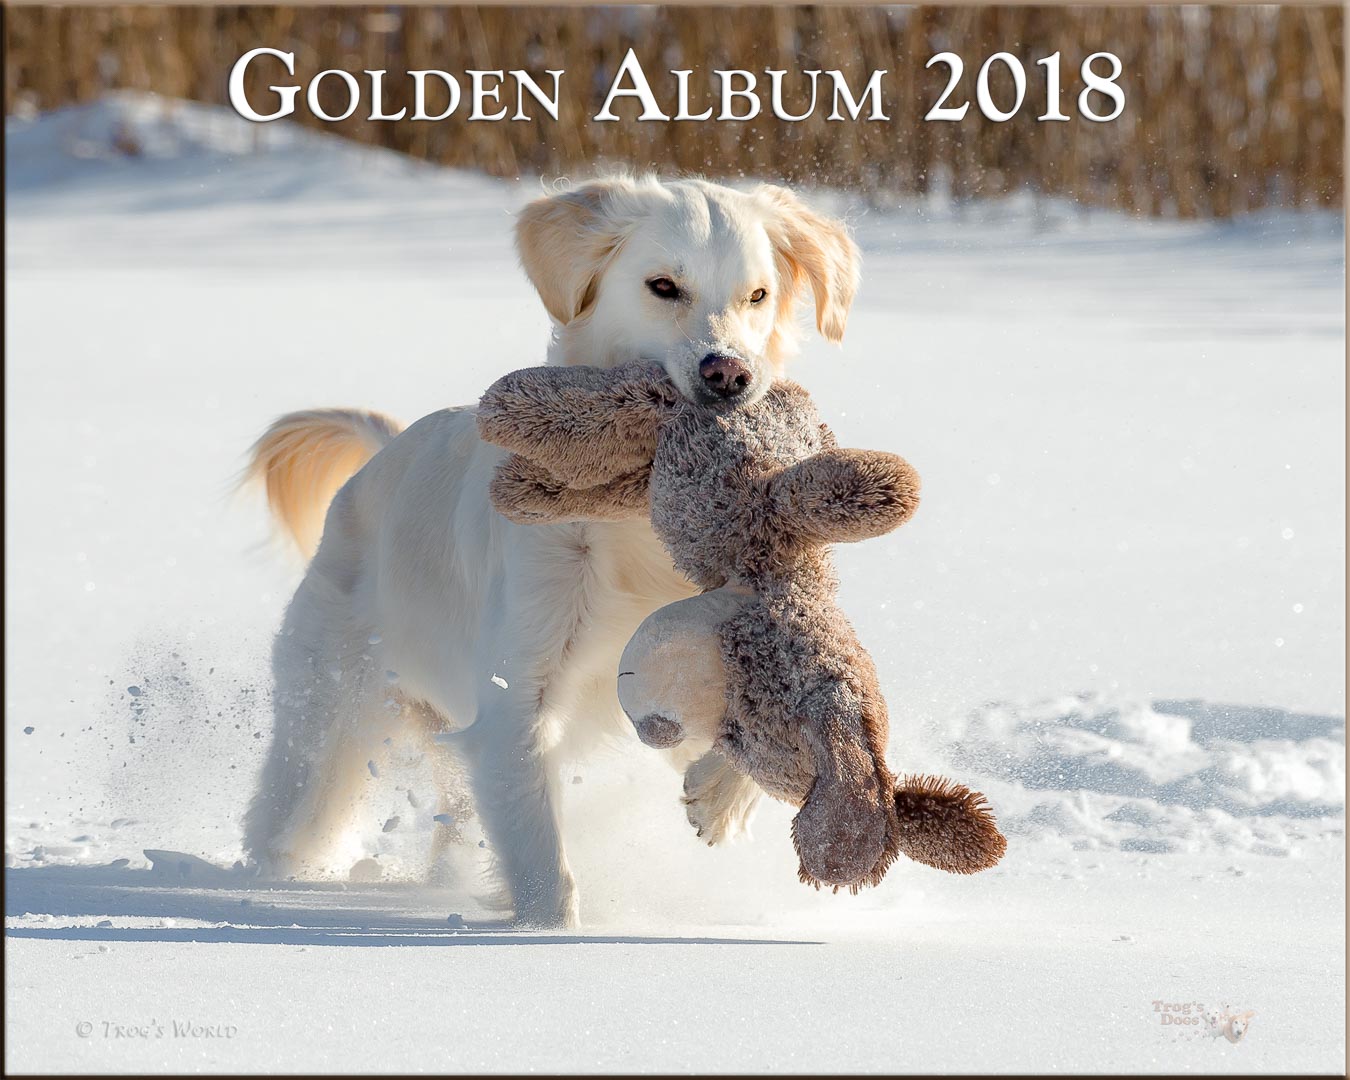 Golden Retriever with a teddy bear in the snow